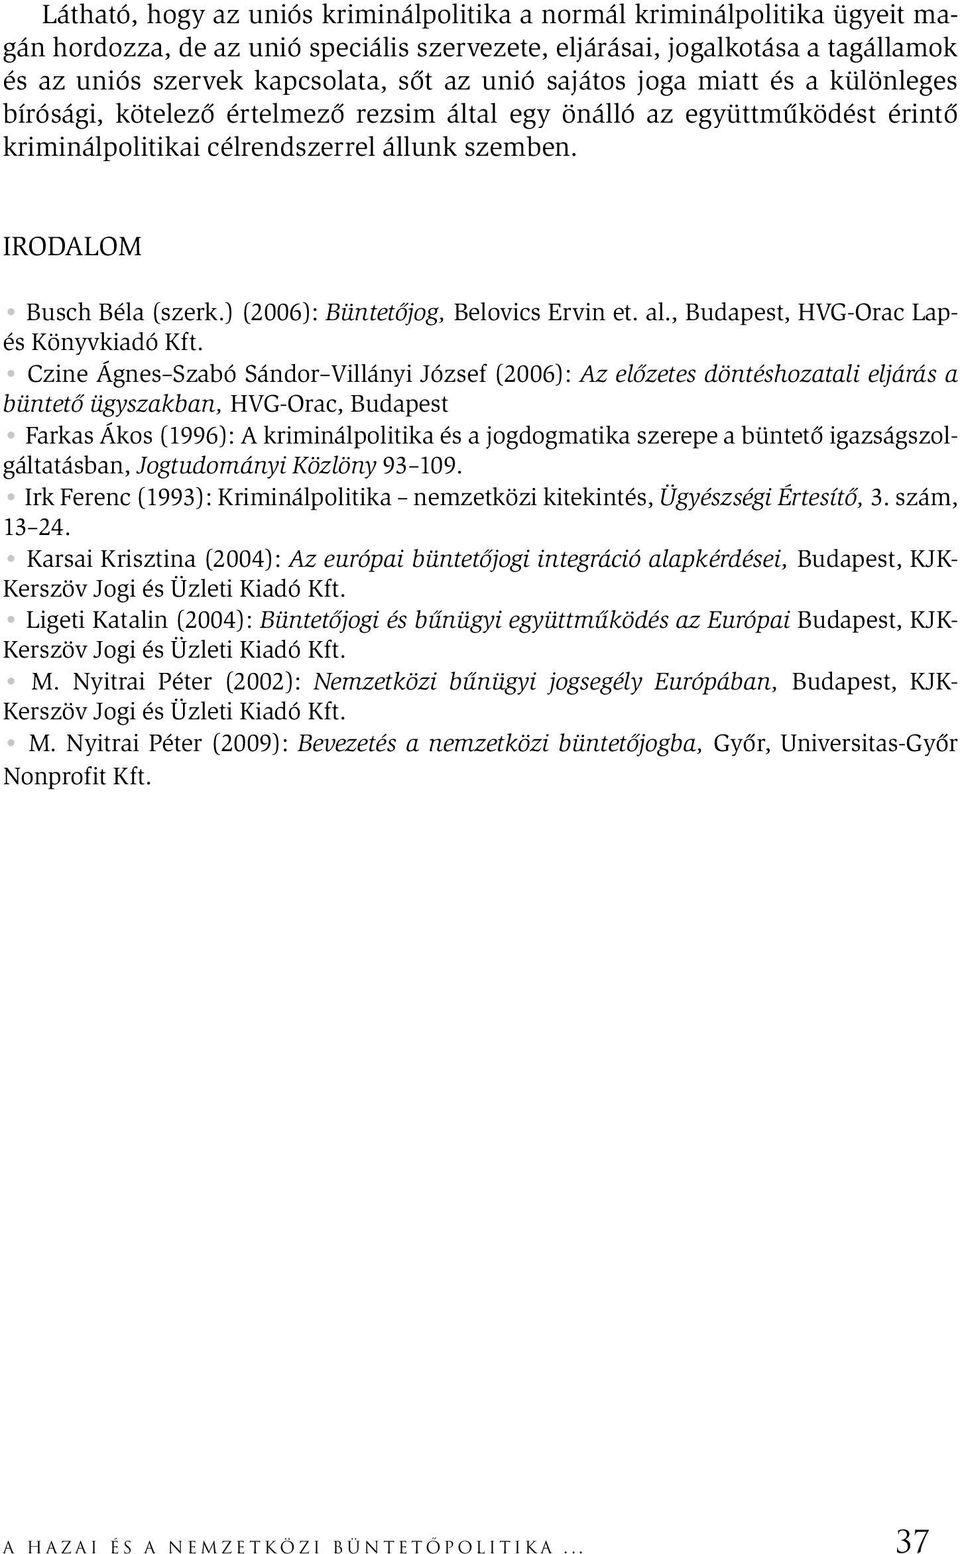 ) (2006): Büntetőjog, Belovics Ervin et. al., Budapest, HVG-Orac Lapés Könyvkiadó Kft.